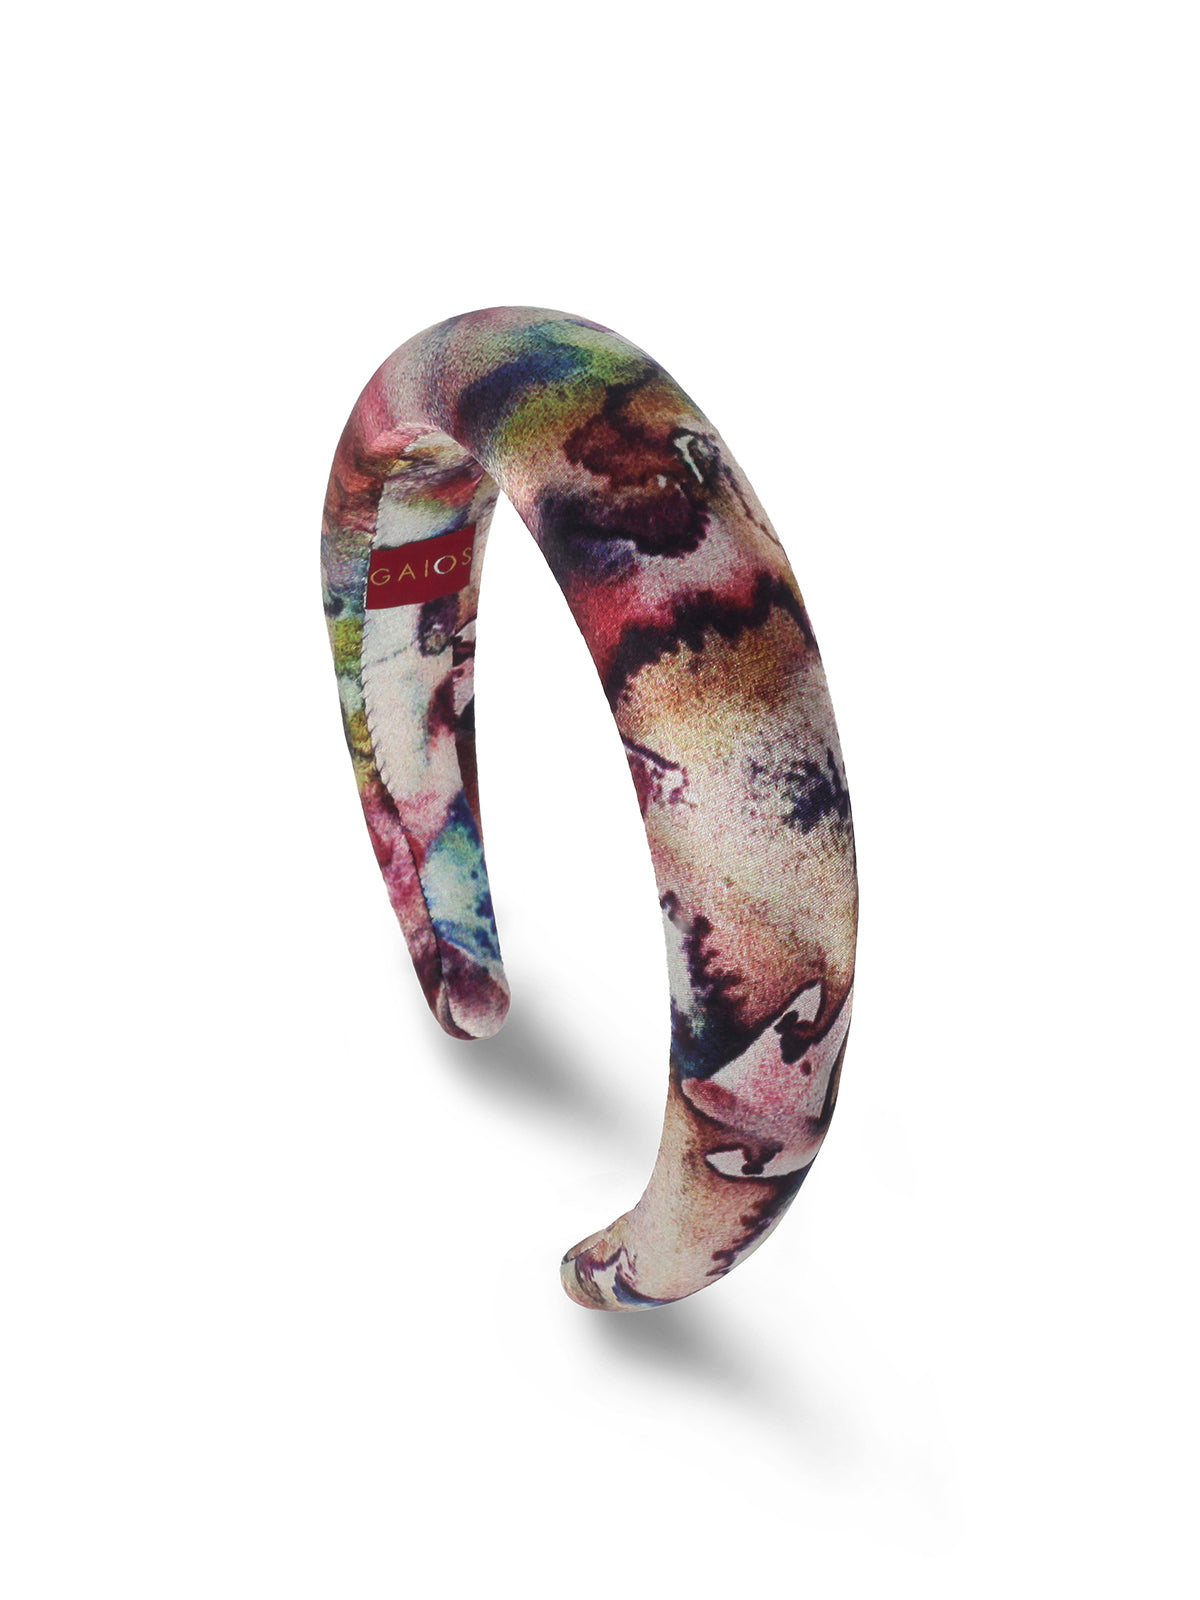 Silk Tie-Dye Loretha Headband